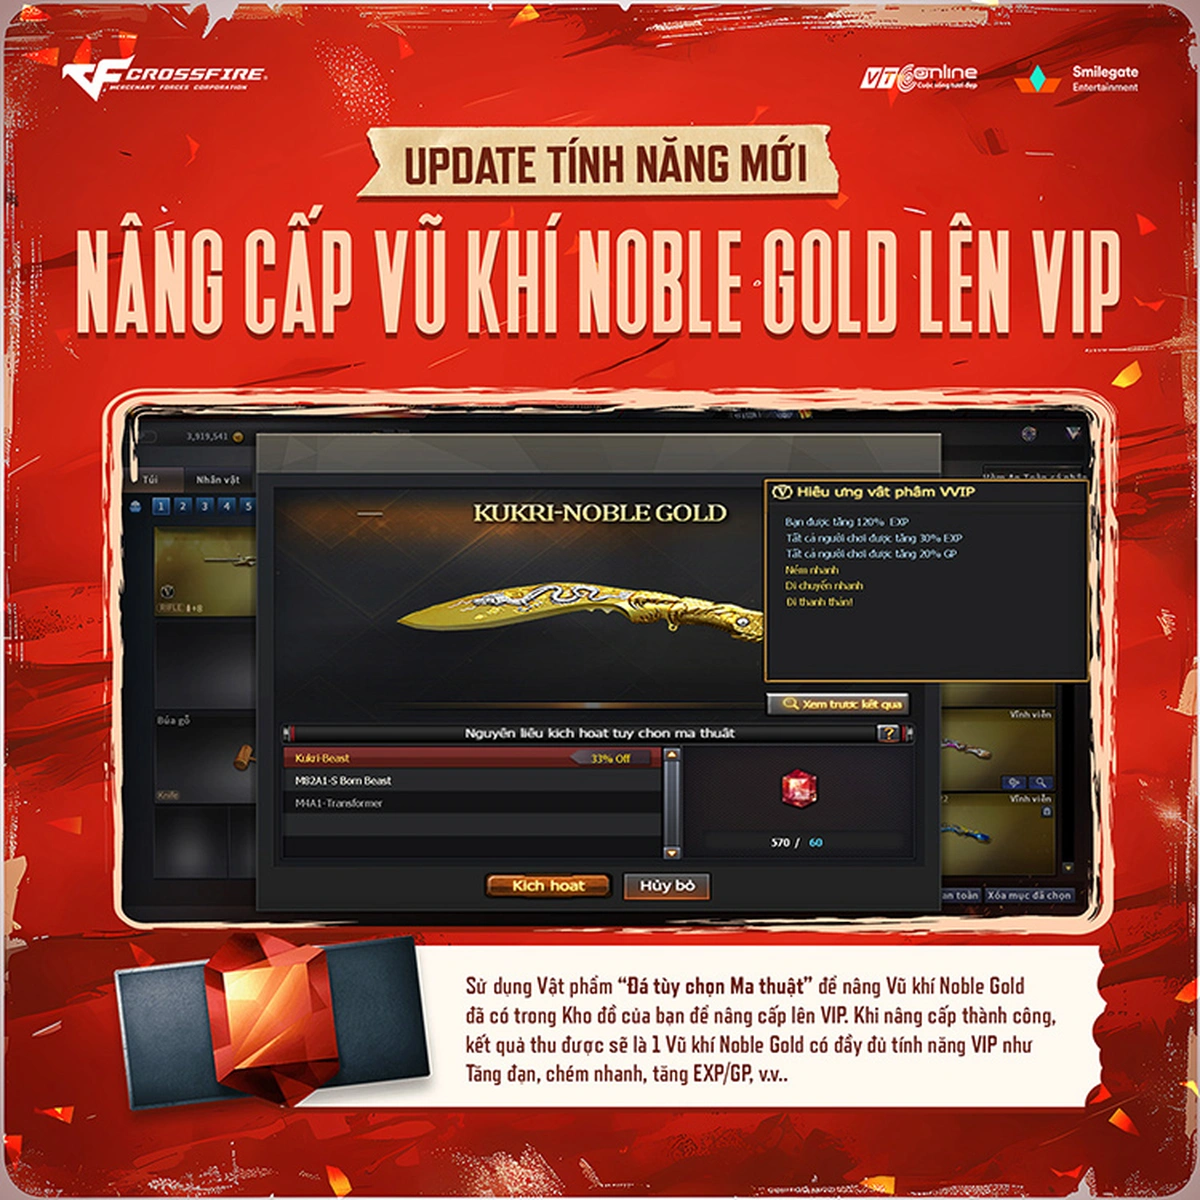 Hệ thống Nâng cấp Vũ khí Noble Gold lên VIP